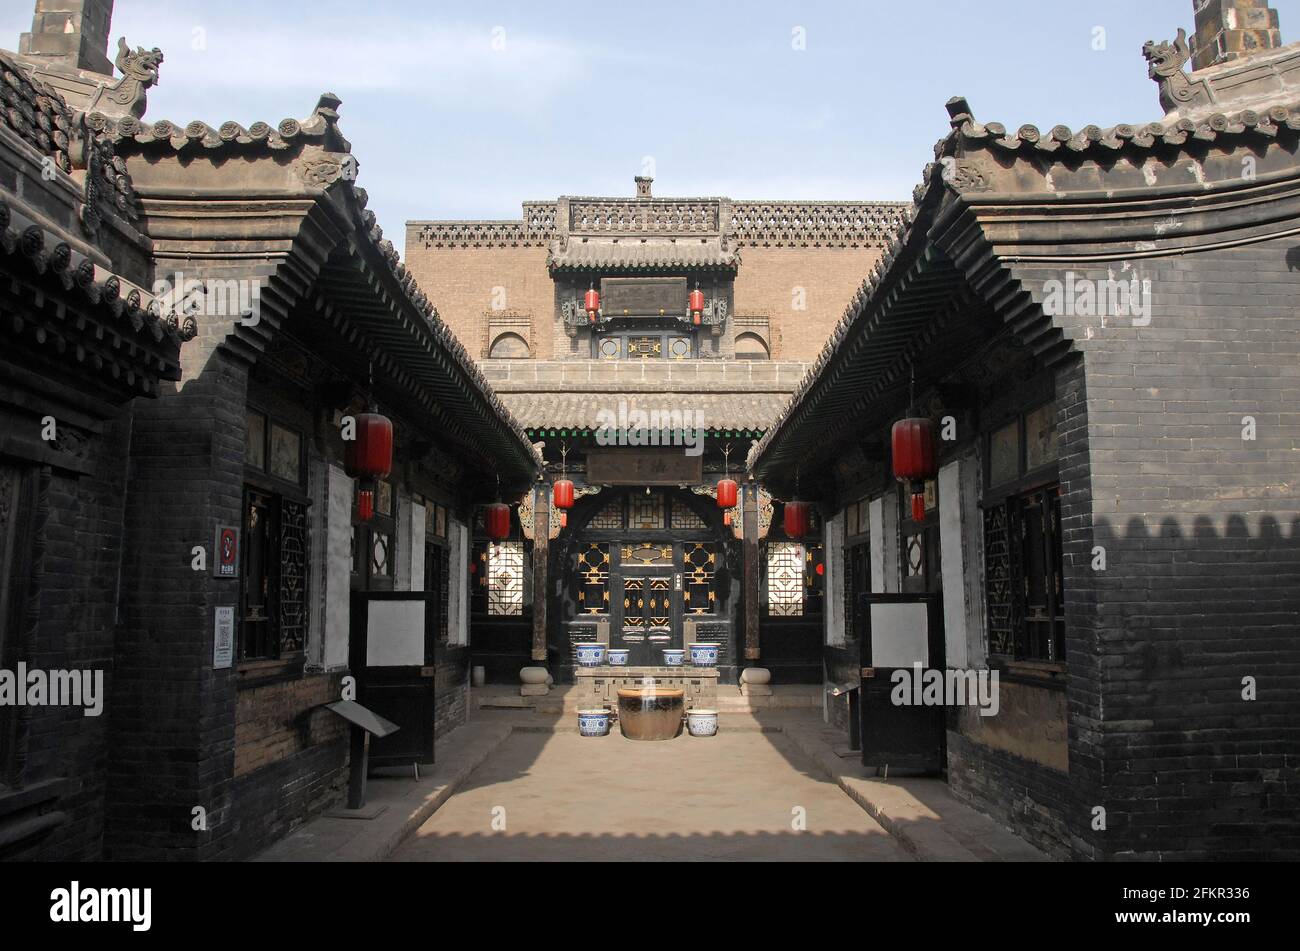 Le Rishengchang de Pingyao, dans la province du Shanxi, en Chine, a été le premier projet de banque en Chine. C'est maintenant le Musée Rishengchang. Banque D'Images